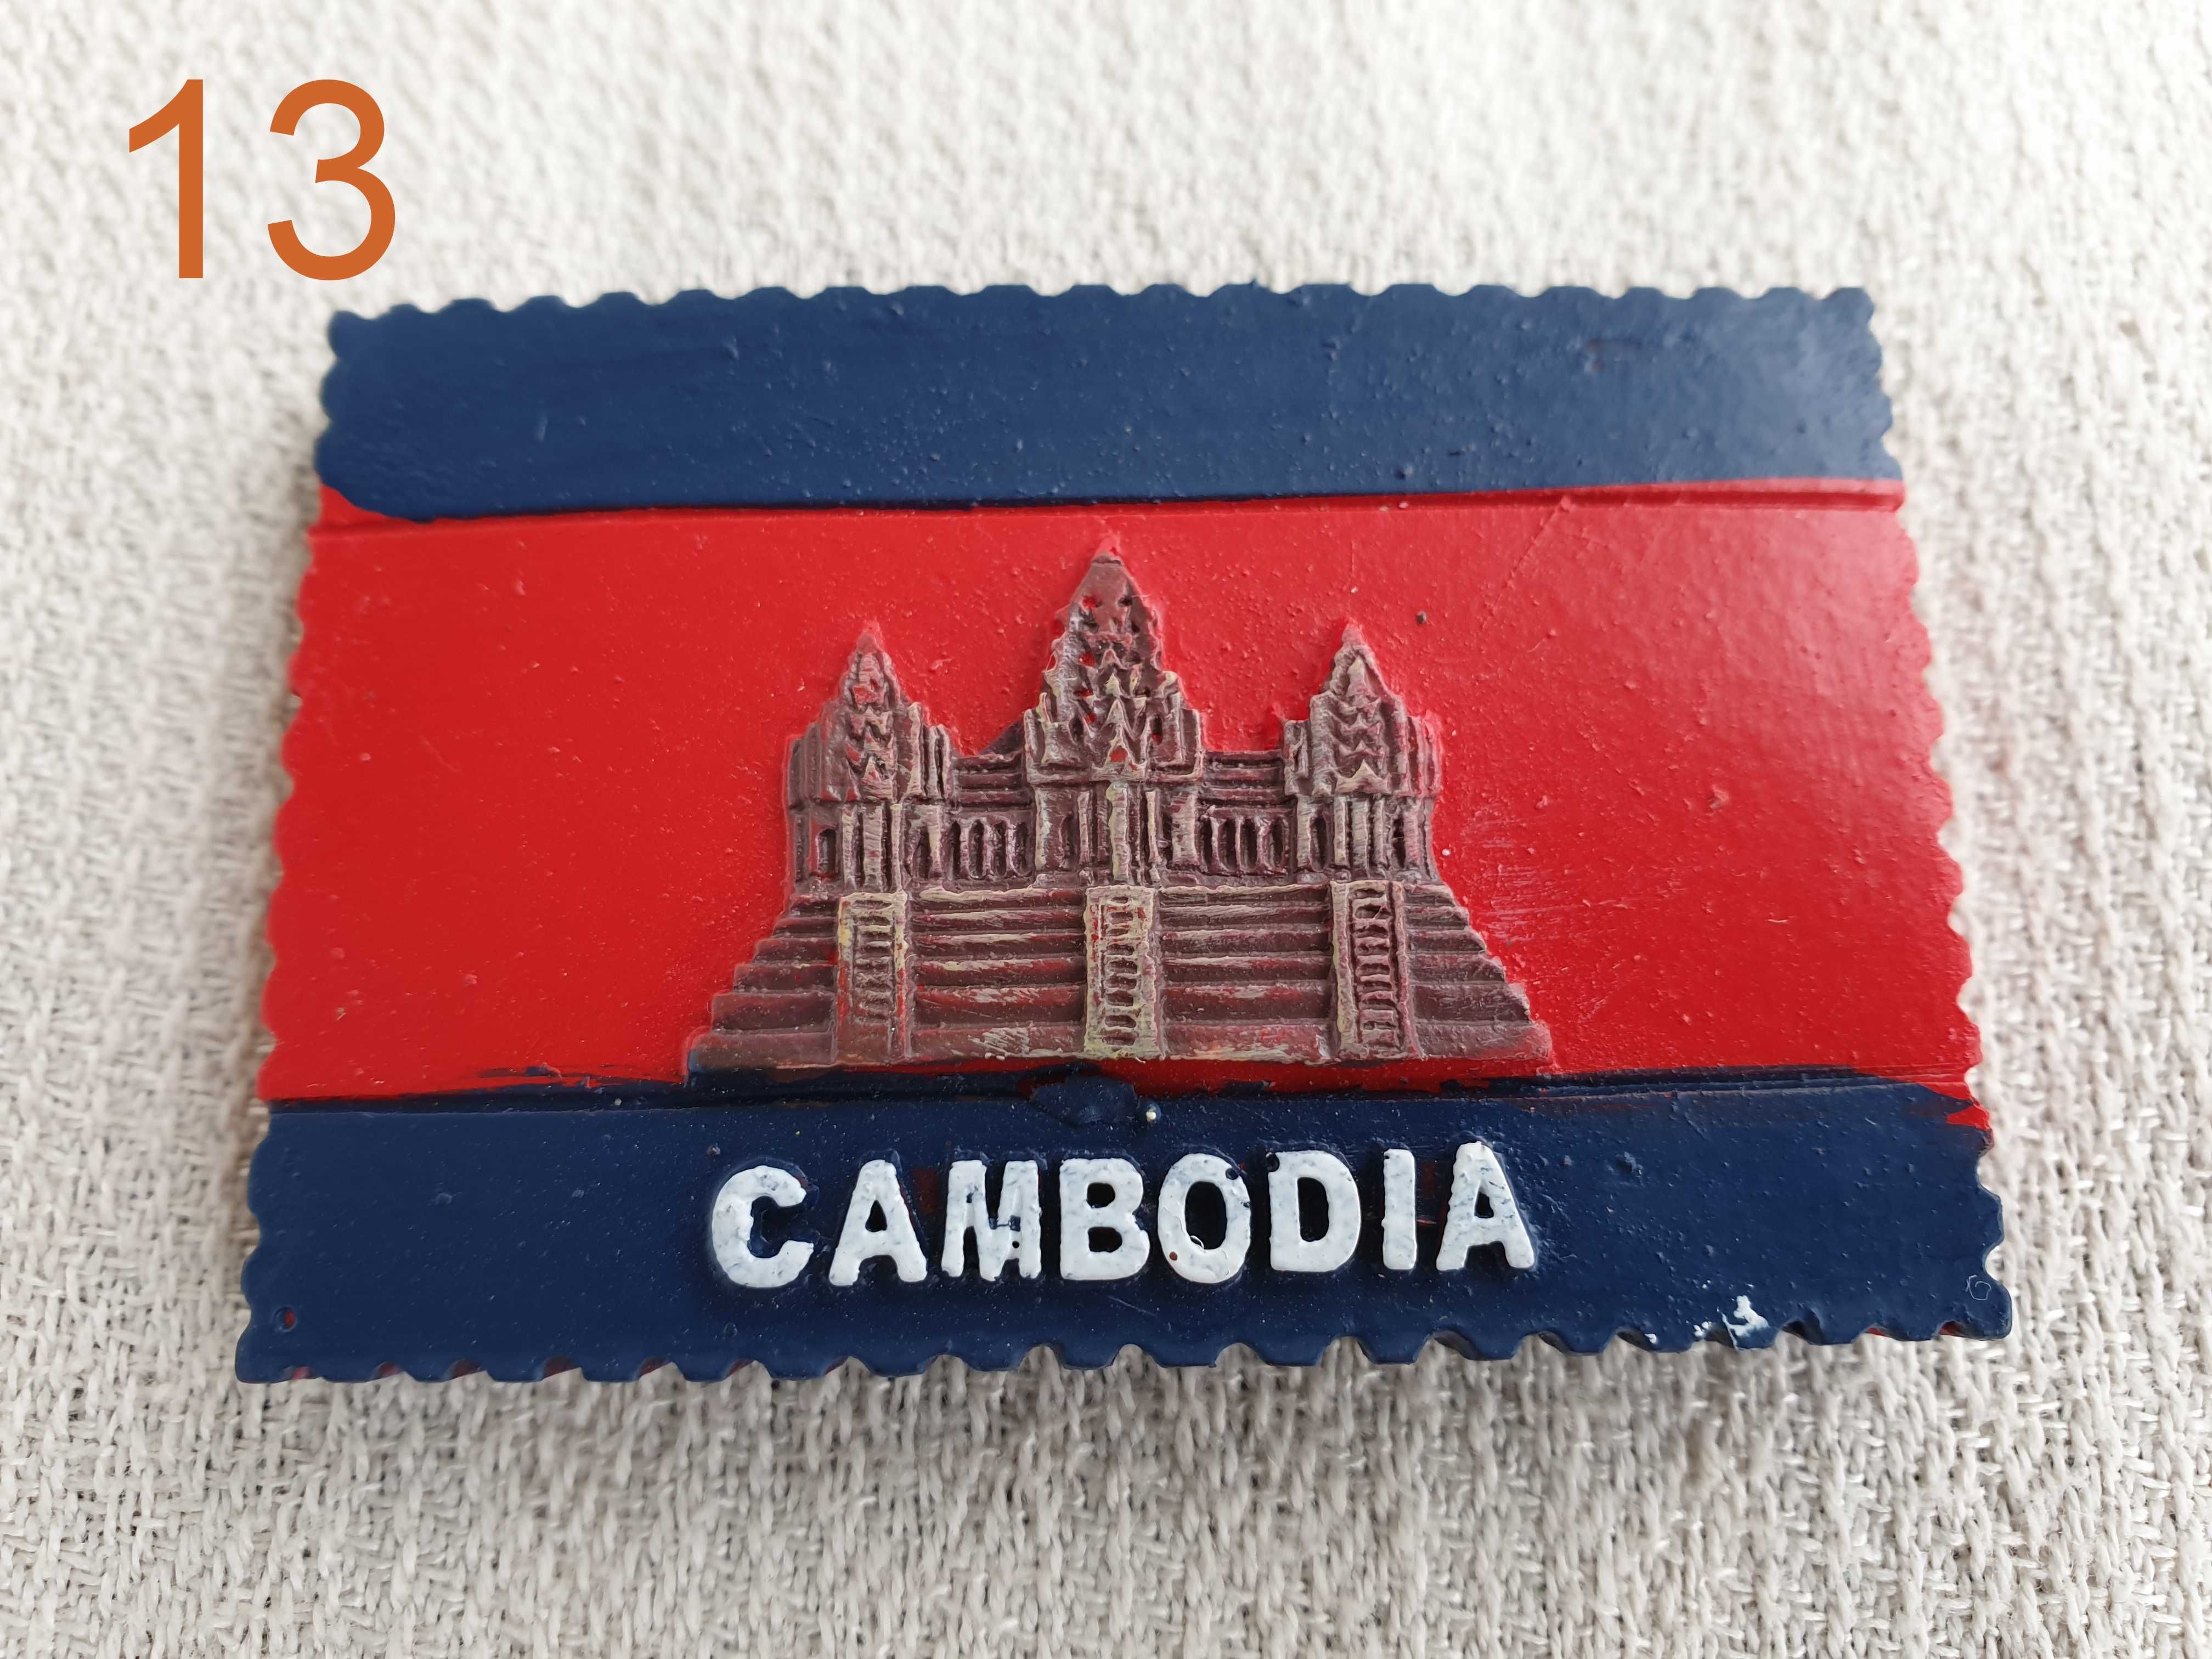 Kambodża, Cambodia - Magnes na lodówkę - wzór 13